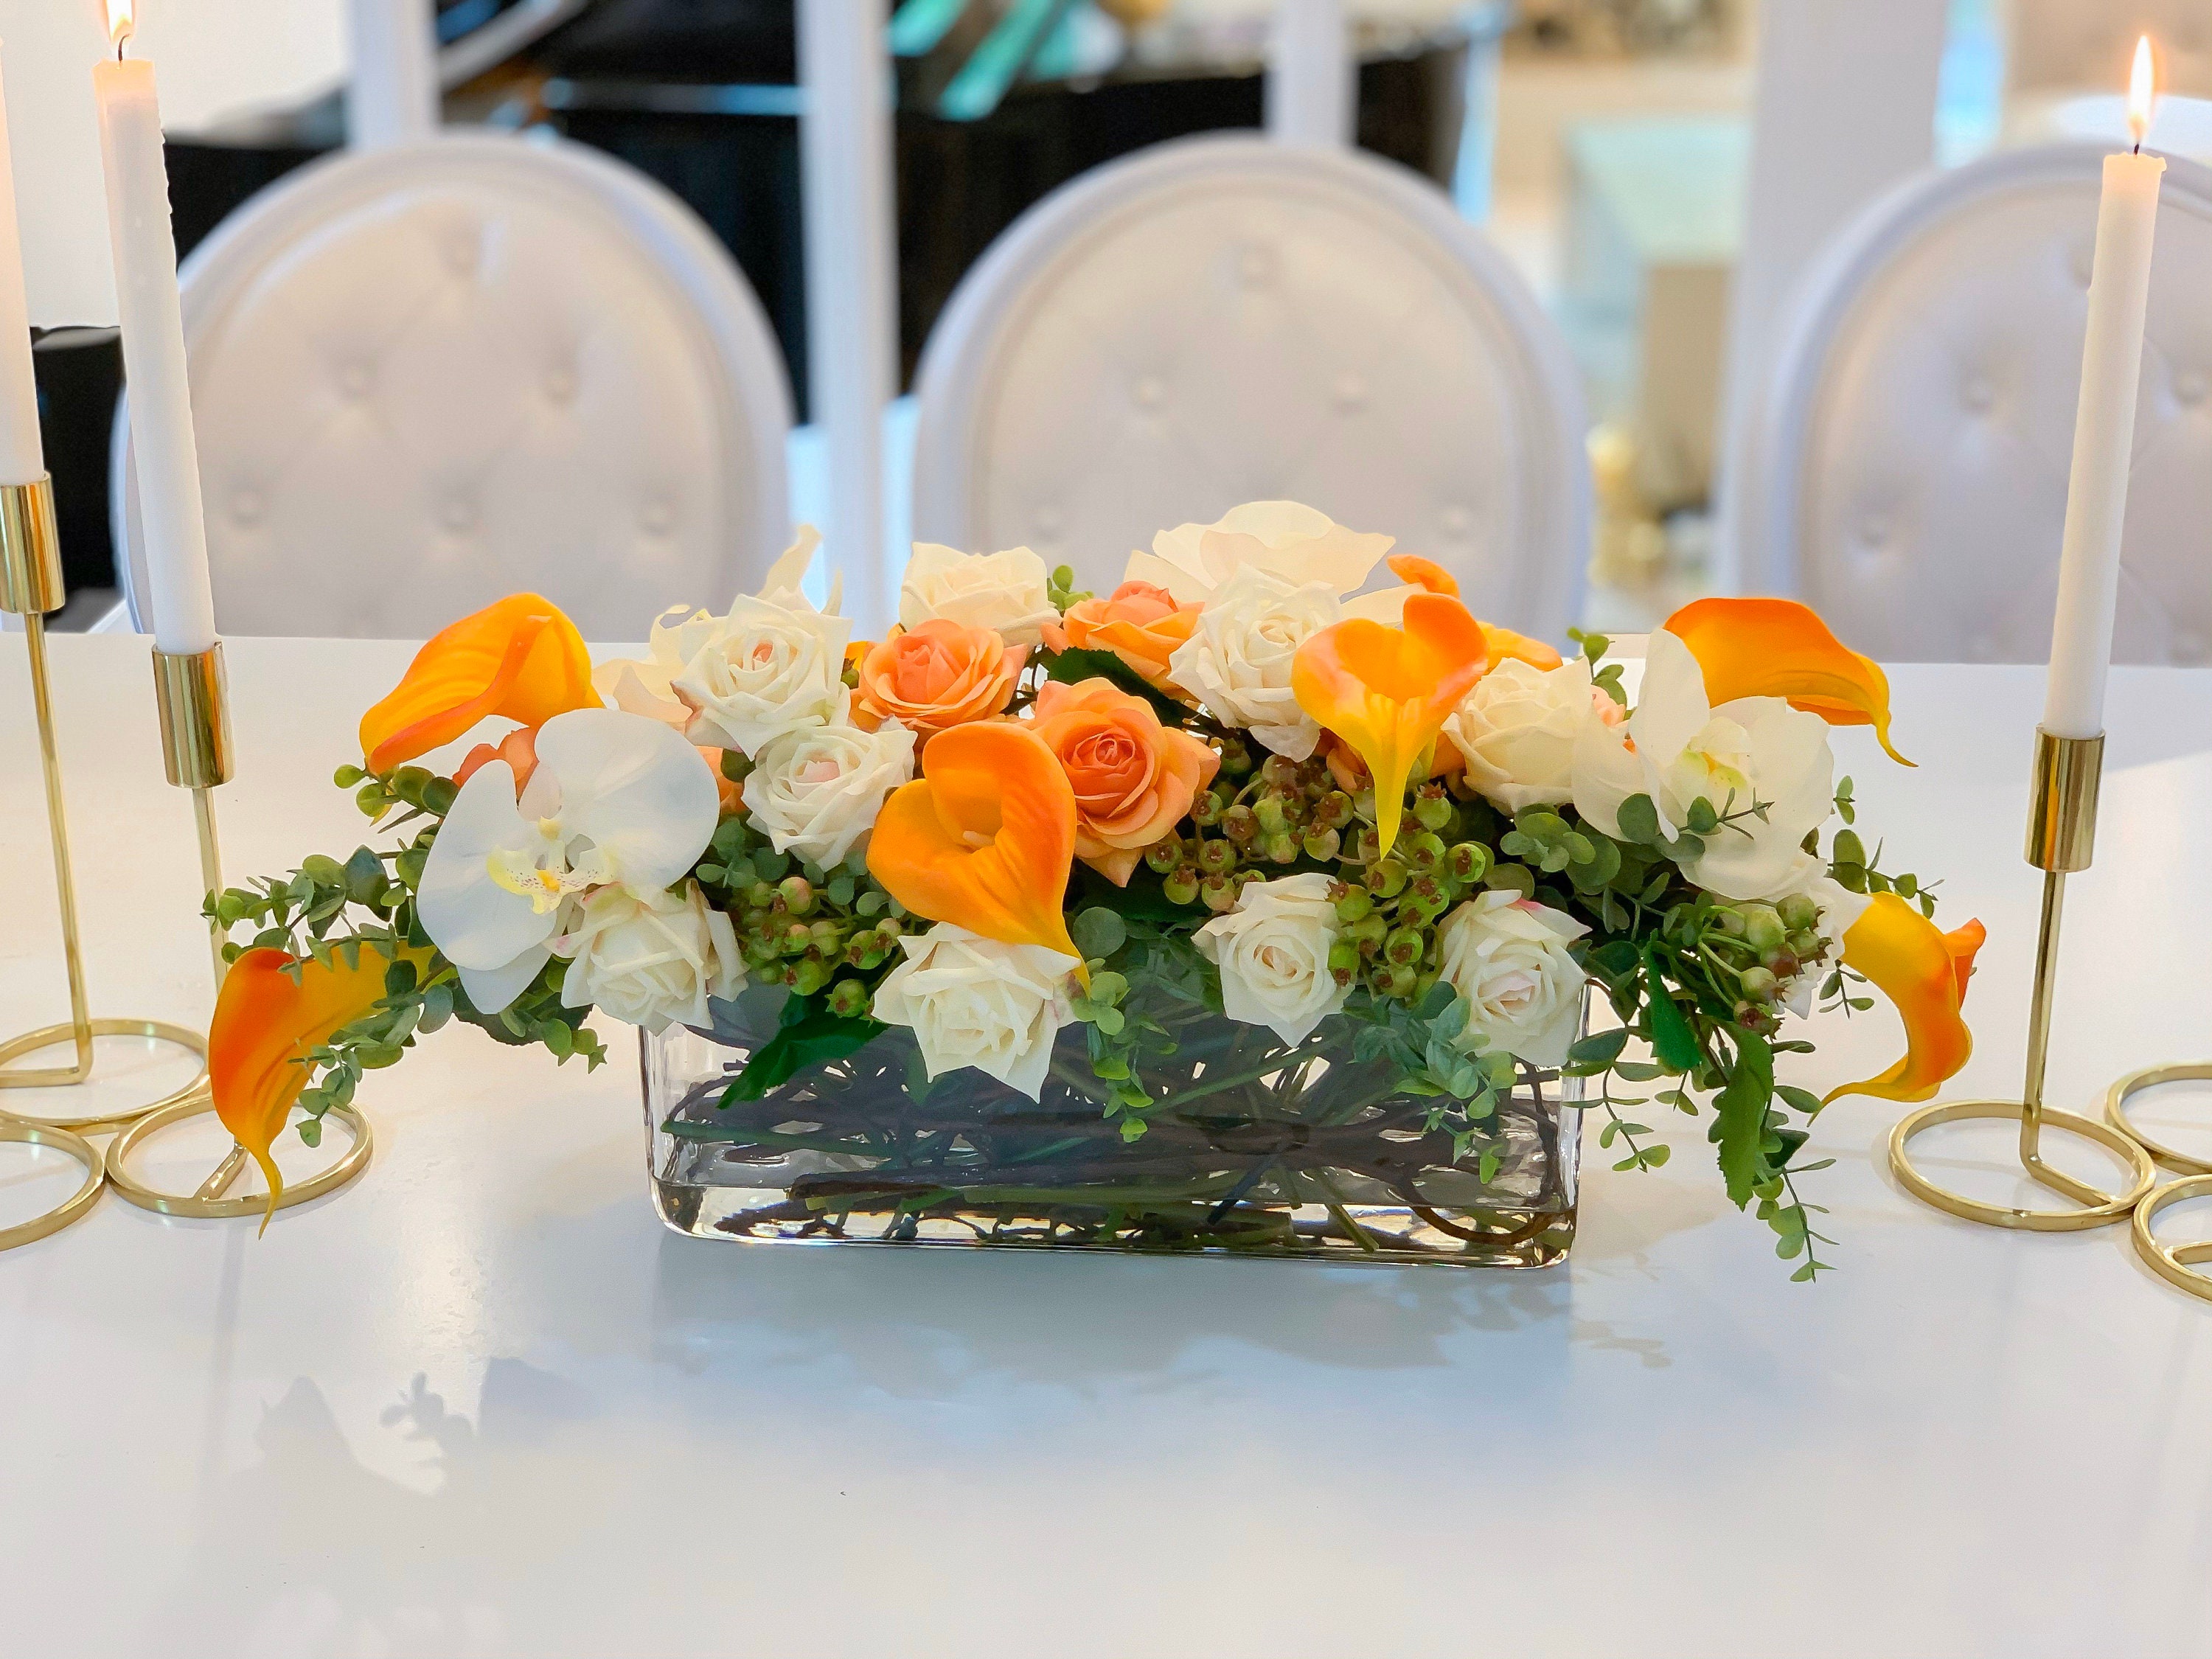 Moderno centro de mesa largo para la mesa de la cena de Acción de Gracias,  arreglo floral hecho a mano, gran arreglo de orquídeas Calla Lily Rose -   México